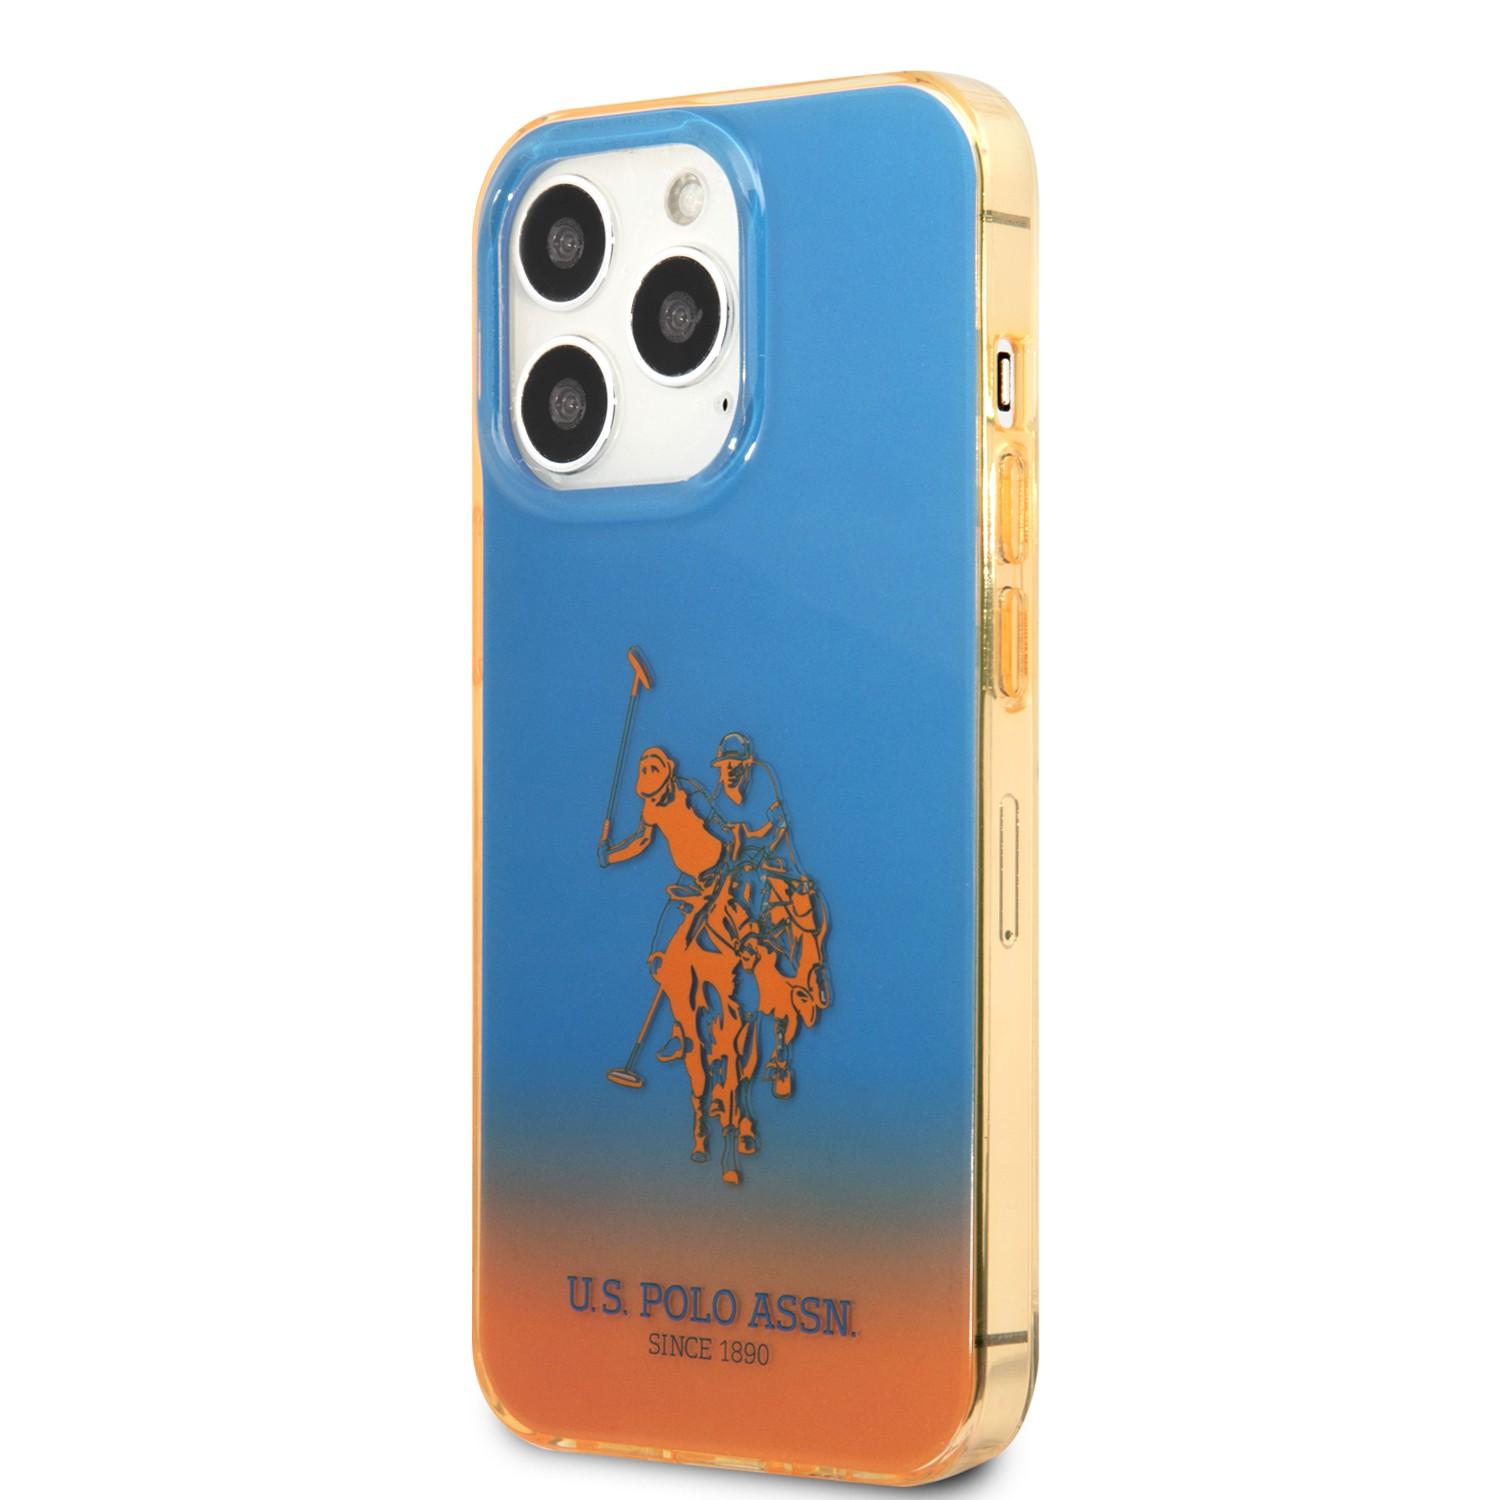 كفر جوال ايفون 14 برو سيليكون لون أزرق وبرتقالي من يو اس بولو USPA PC TPU Gradient Case With Dyed Bumper & Horse Logo For iPhone 14 Pro